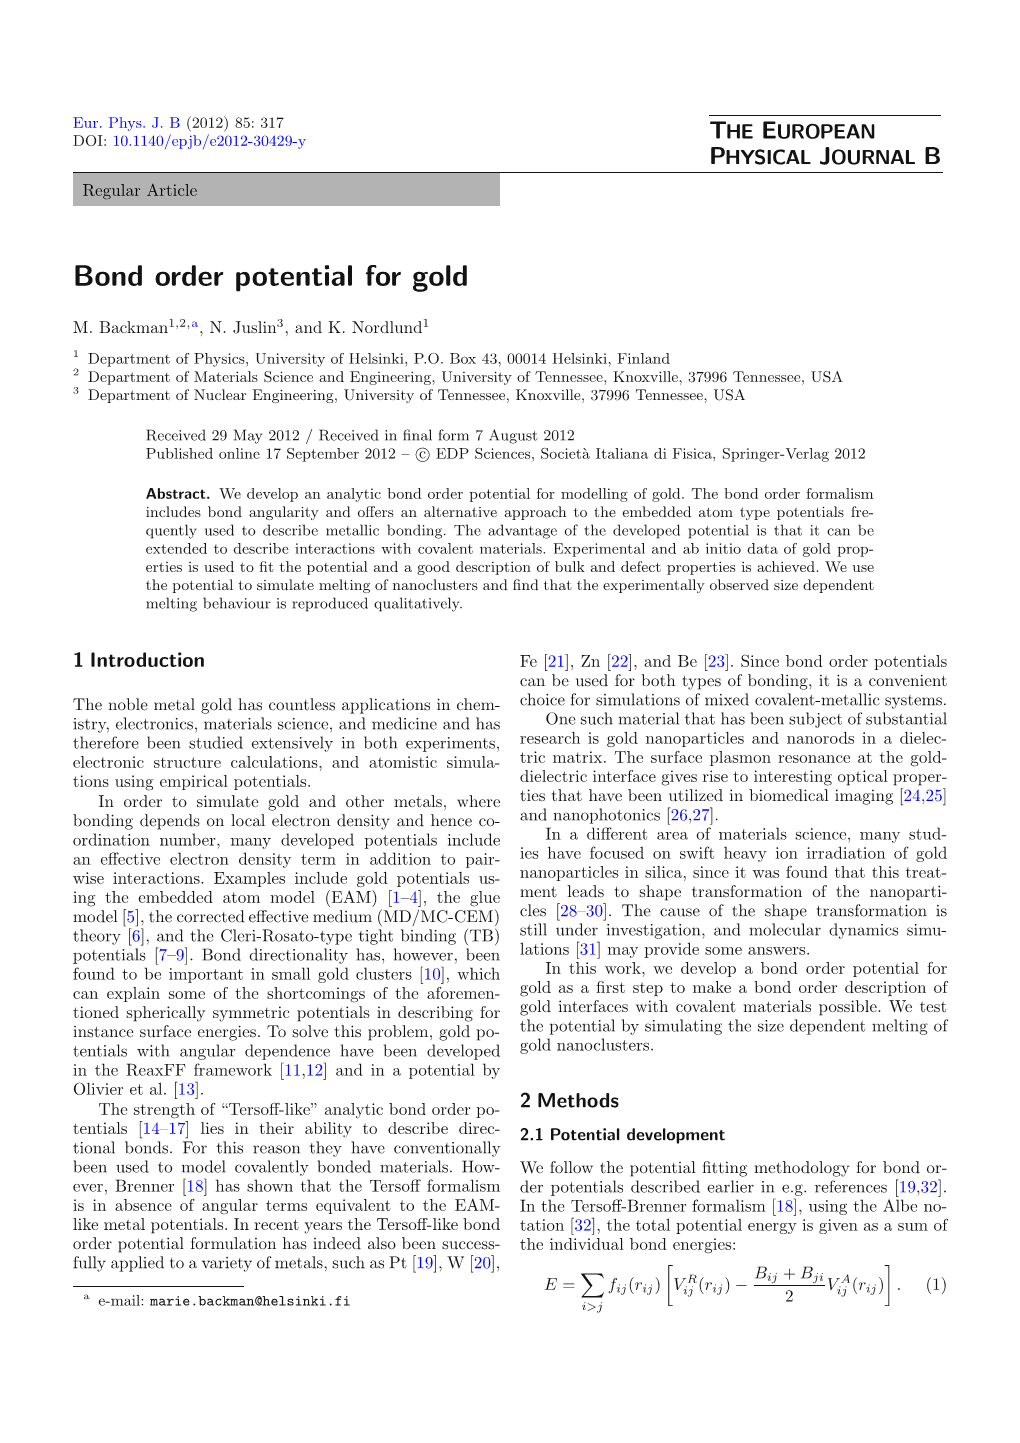 Bond Order Potential for Gold